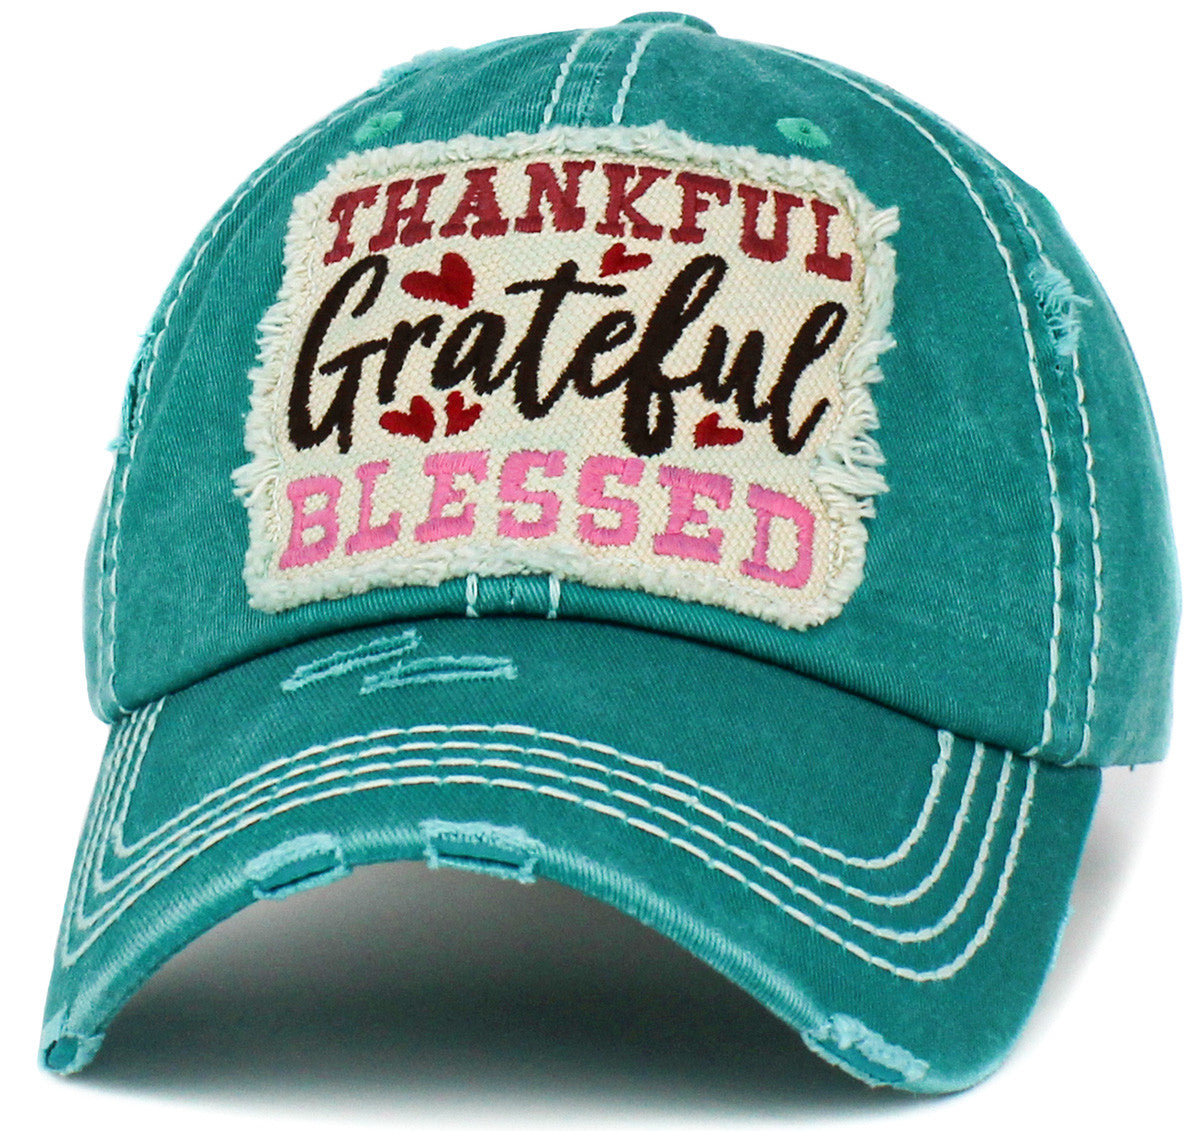 Thankful Grateful Blessed Vintage Hat - iNeedaHat.COM